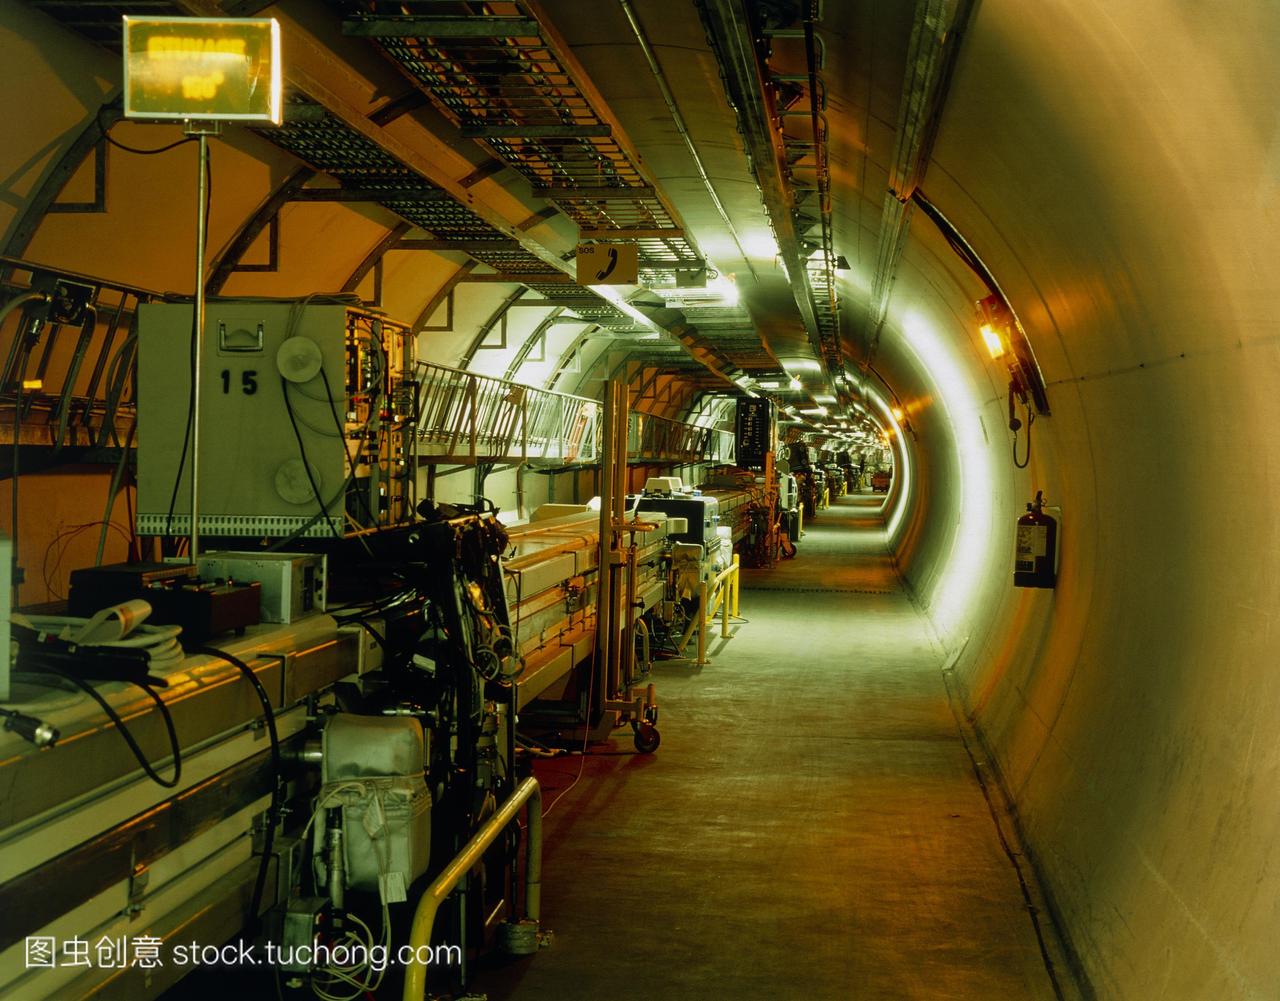 蜡欧洲粒子物理研究所的大型正负电子对撞机日